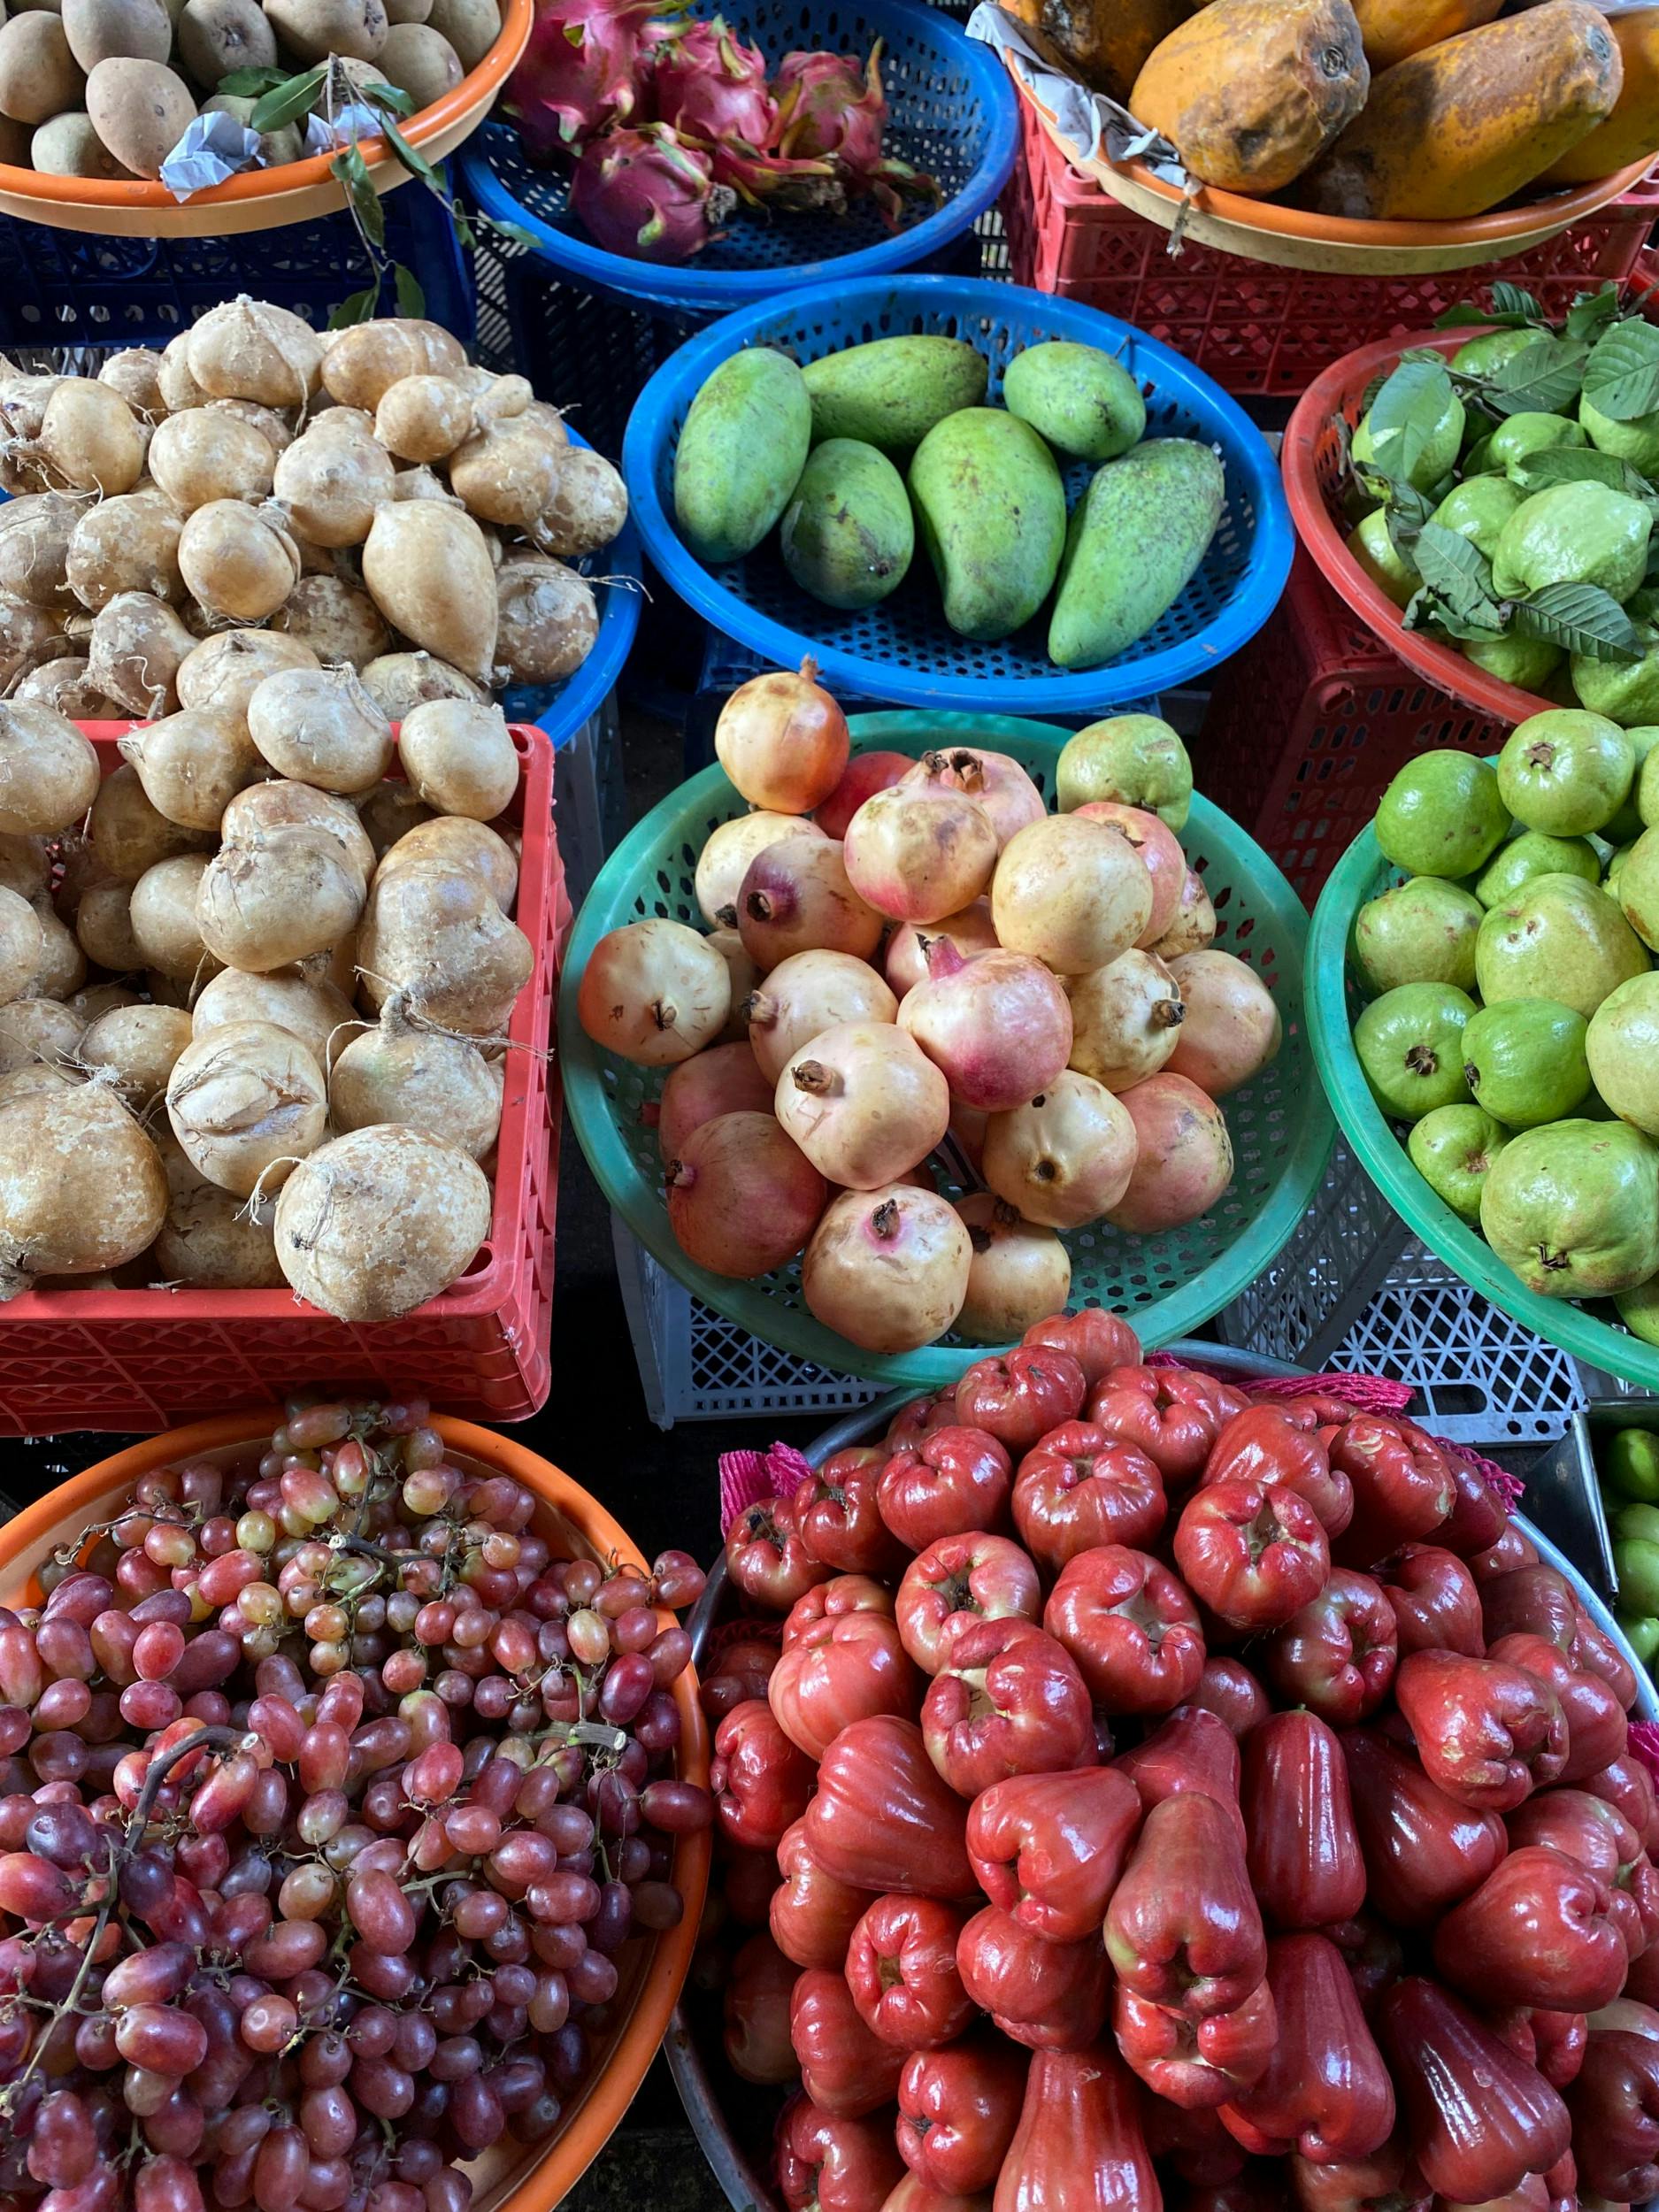 Con Dao Market byder på et orgie af dufte og farver. Gul, rød, lilla, orange og farven grøn får nærmest ny betydning.